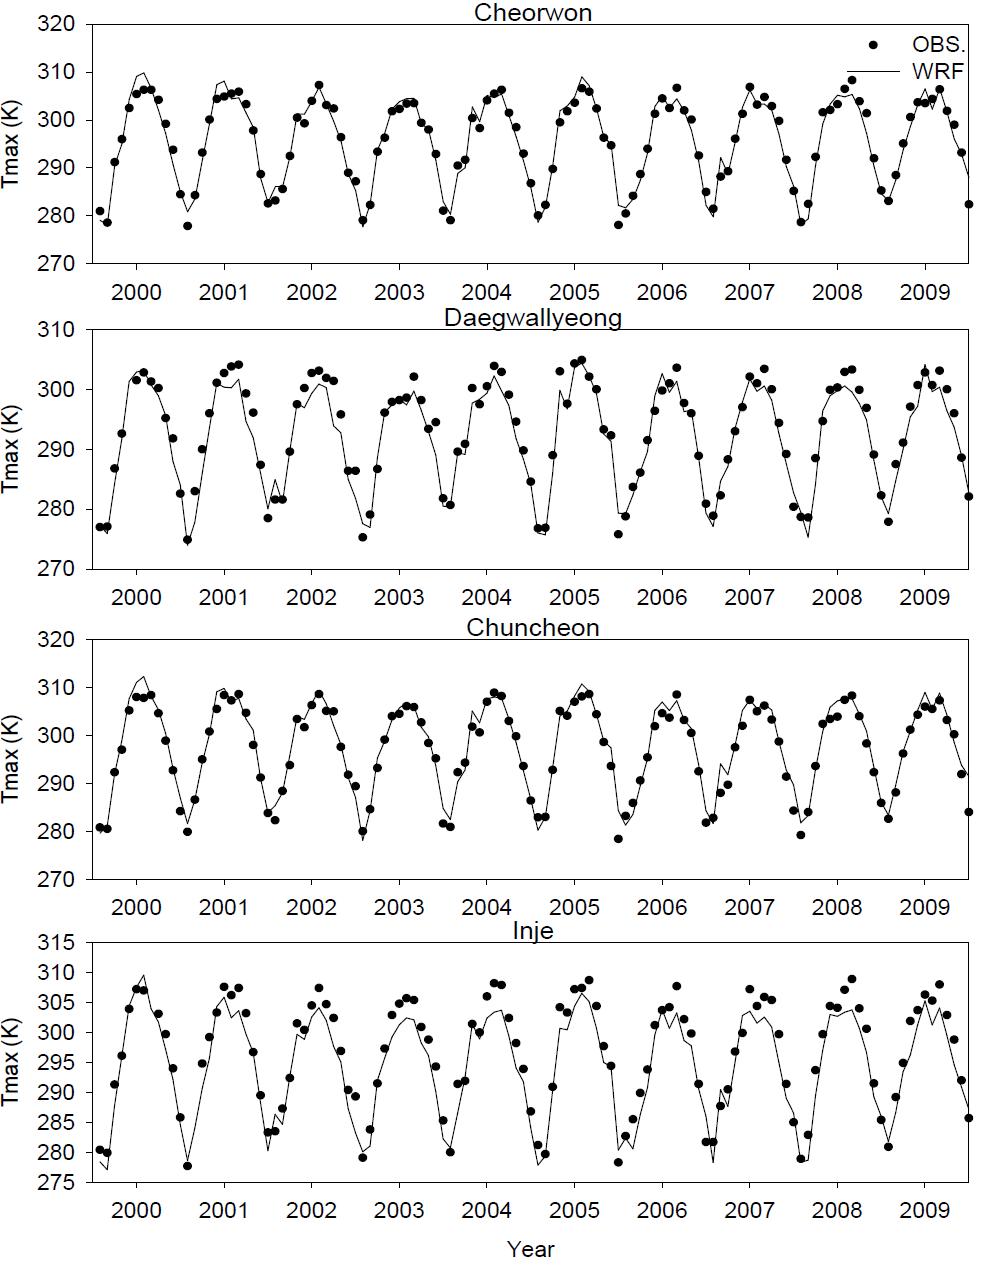 서로 다른 4지역에 대한 10년 동안의 월최고 기온 시간변화 분석